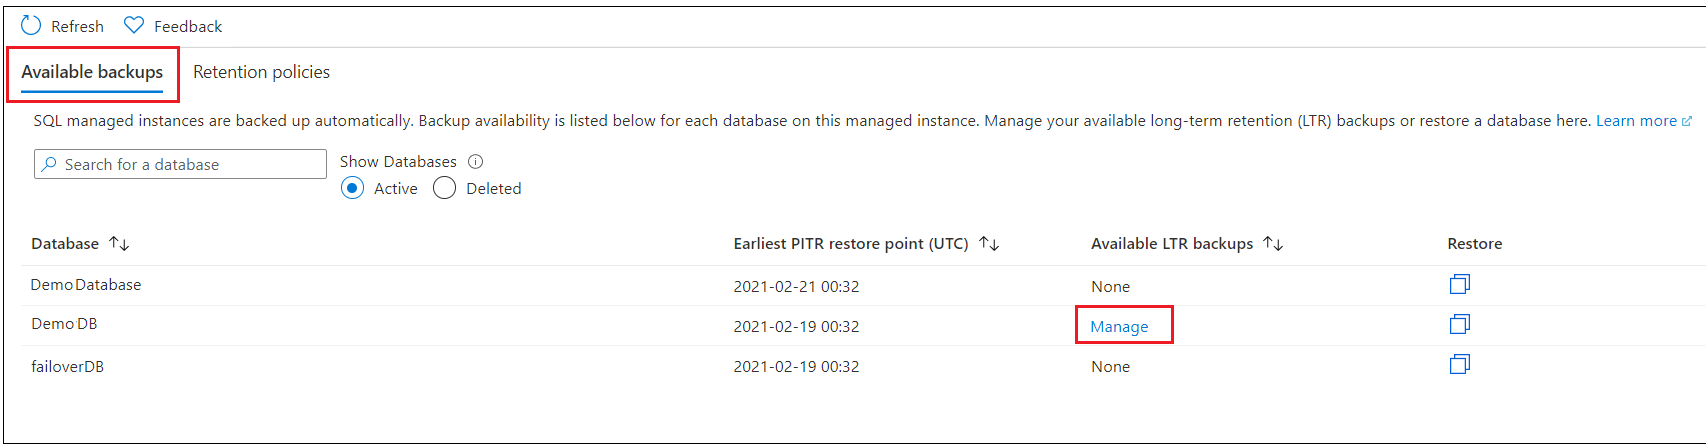 Captura de pantalla de Azure Portal que muestra la opción para seleccionar una base de datos.